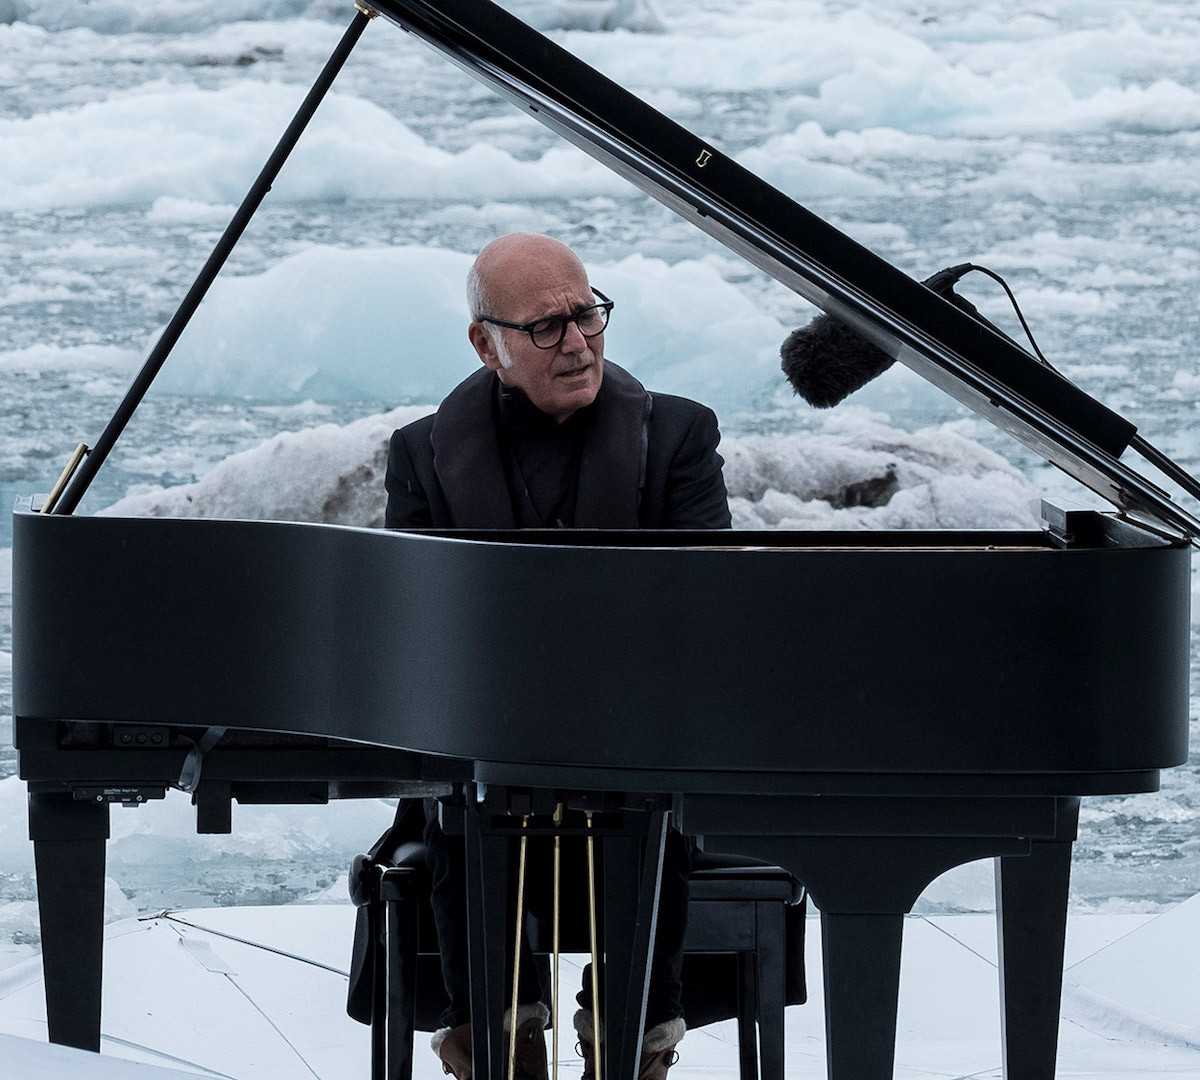 Итальянский композитор Людовико Эйнауди исполняет на рояле в Арктике Арктическую элегию, а ледник у него за спиной тает прямо на глазах